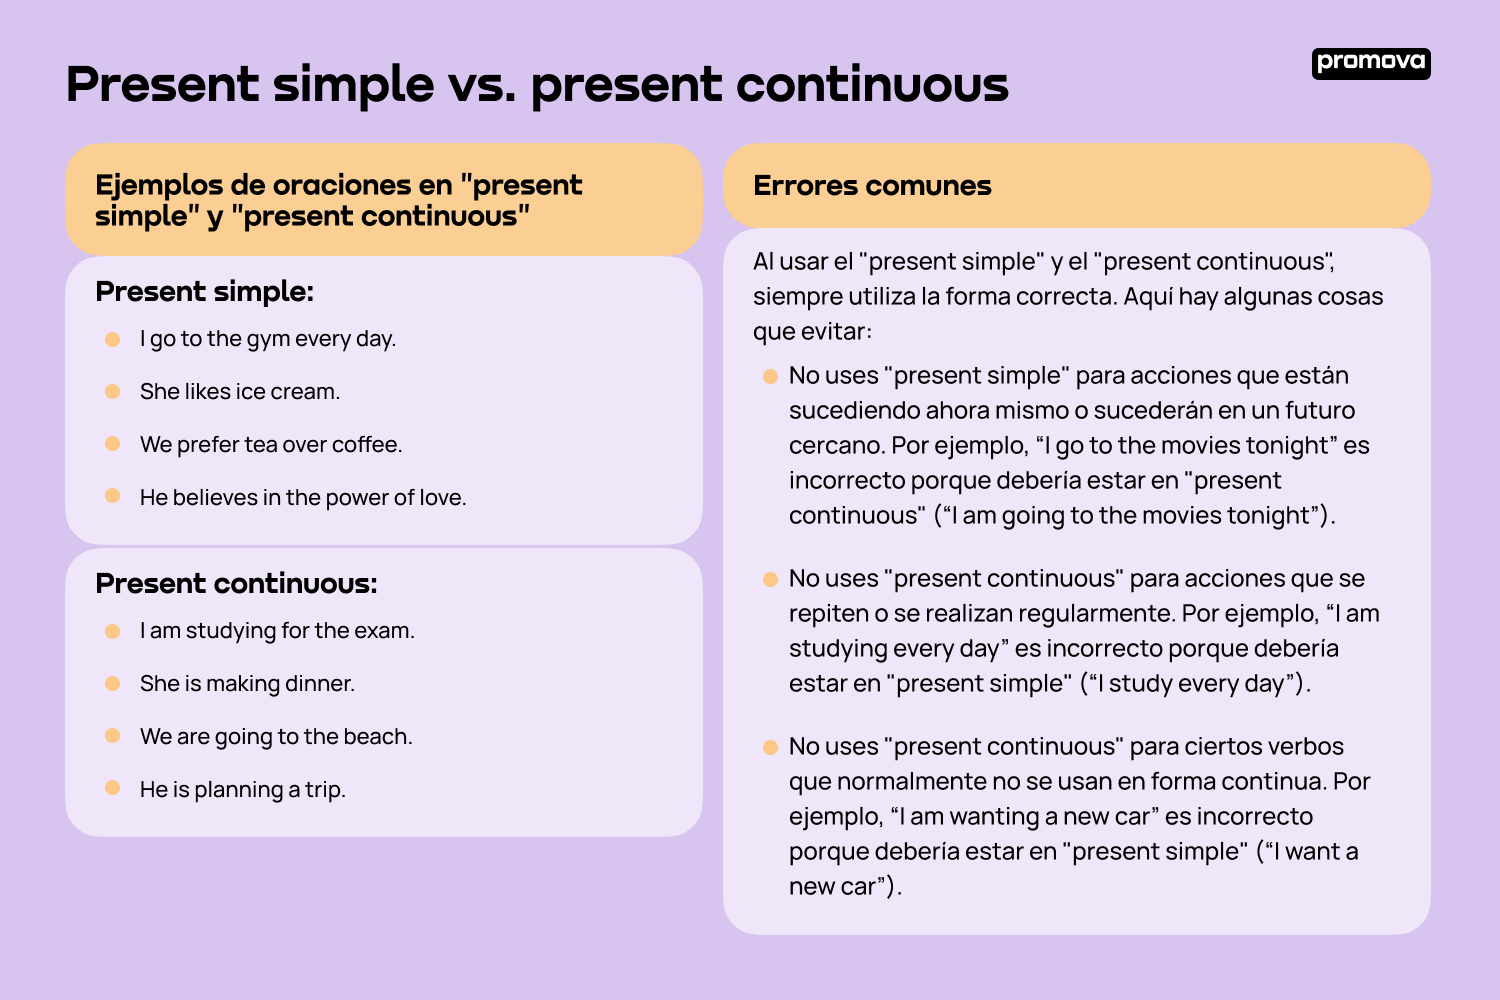 Guía sobre el uso del present simple y presente continuous en inglés